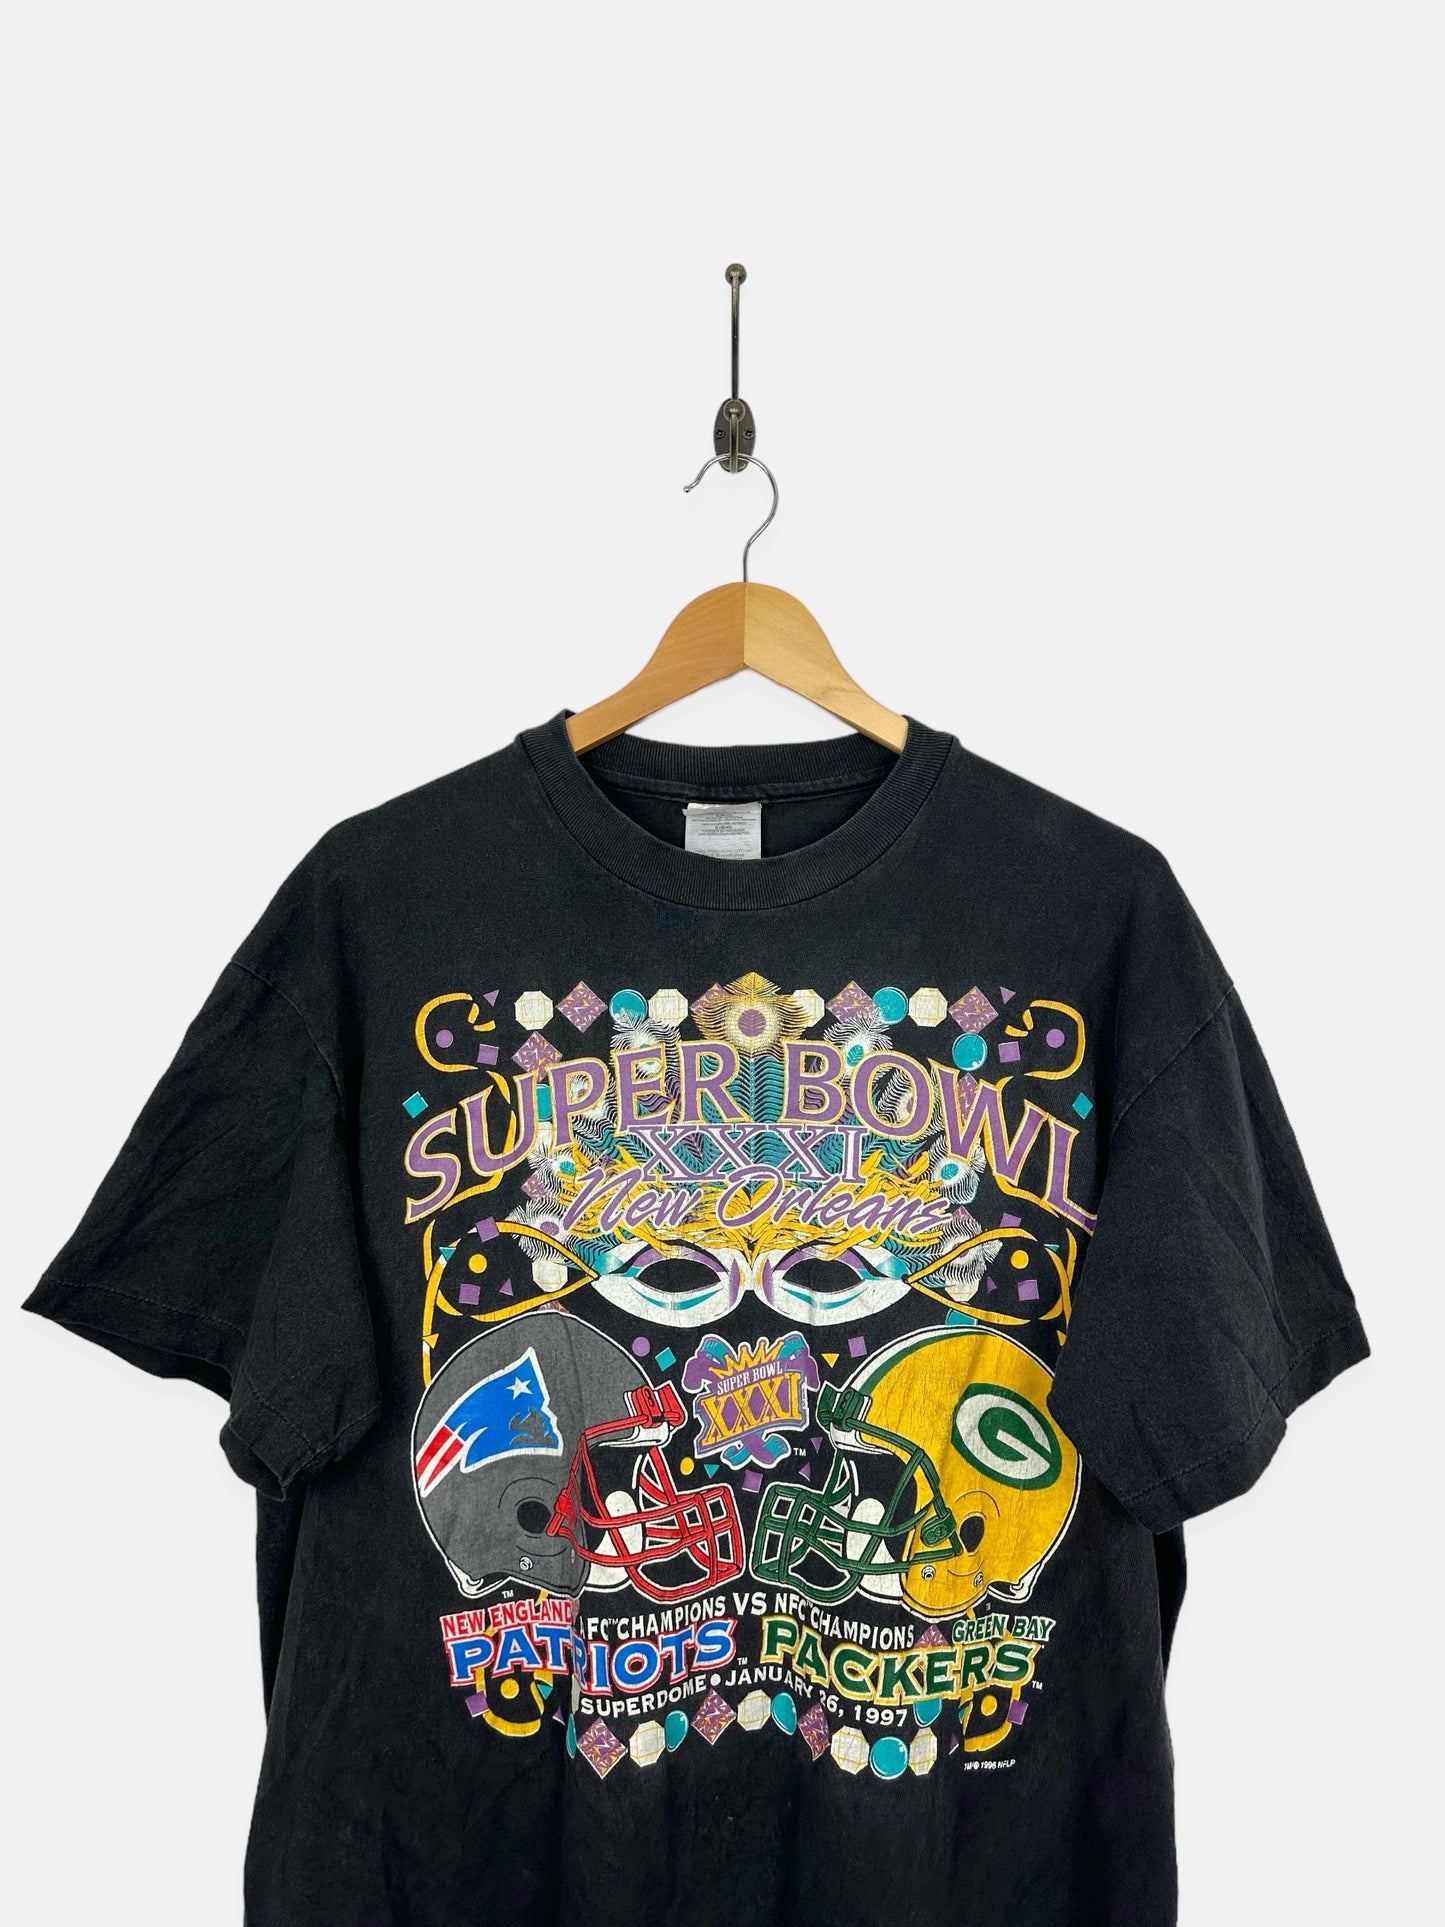 1997 NFL Superbowl Patriots vs Packers Vintage T-Shirt Size S-M